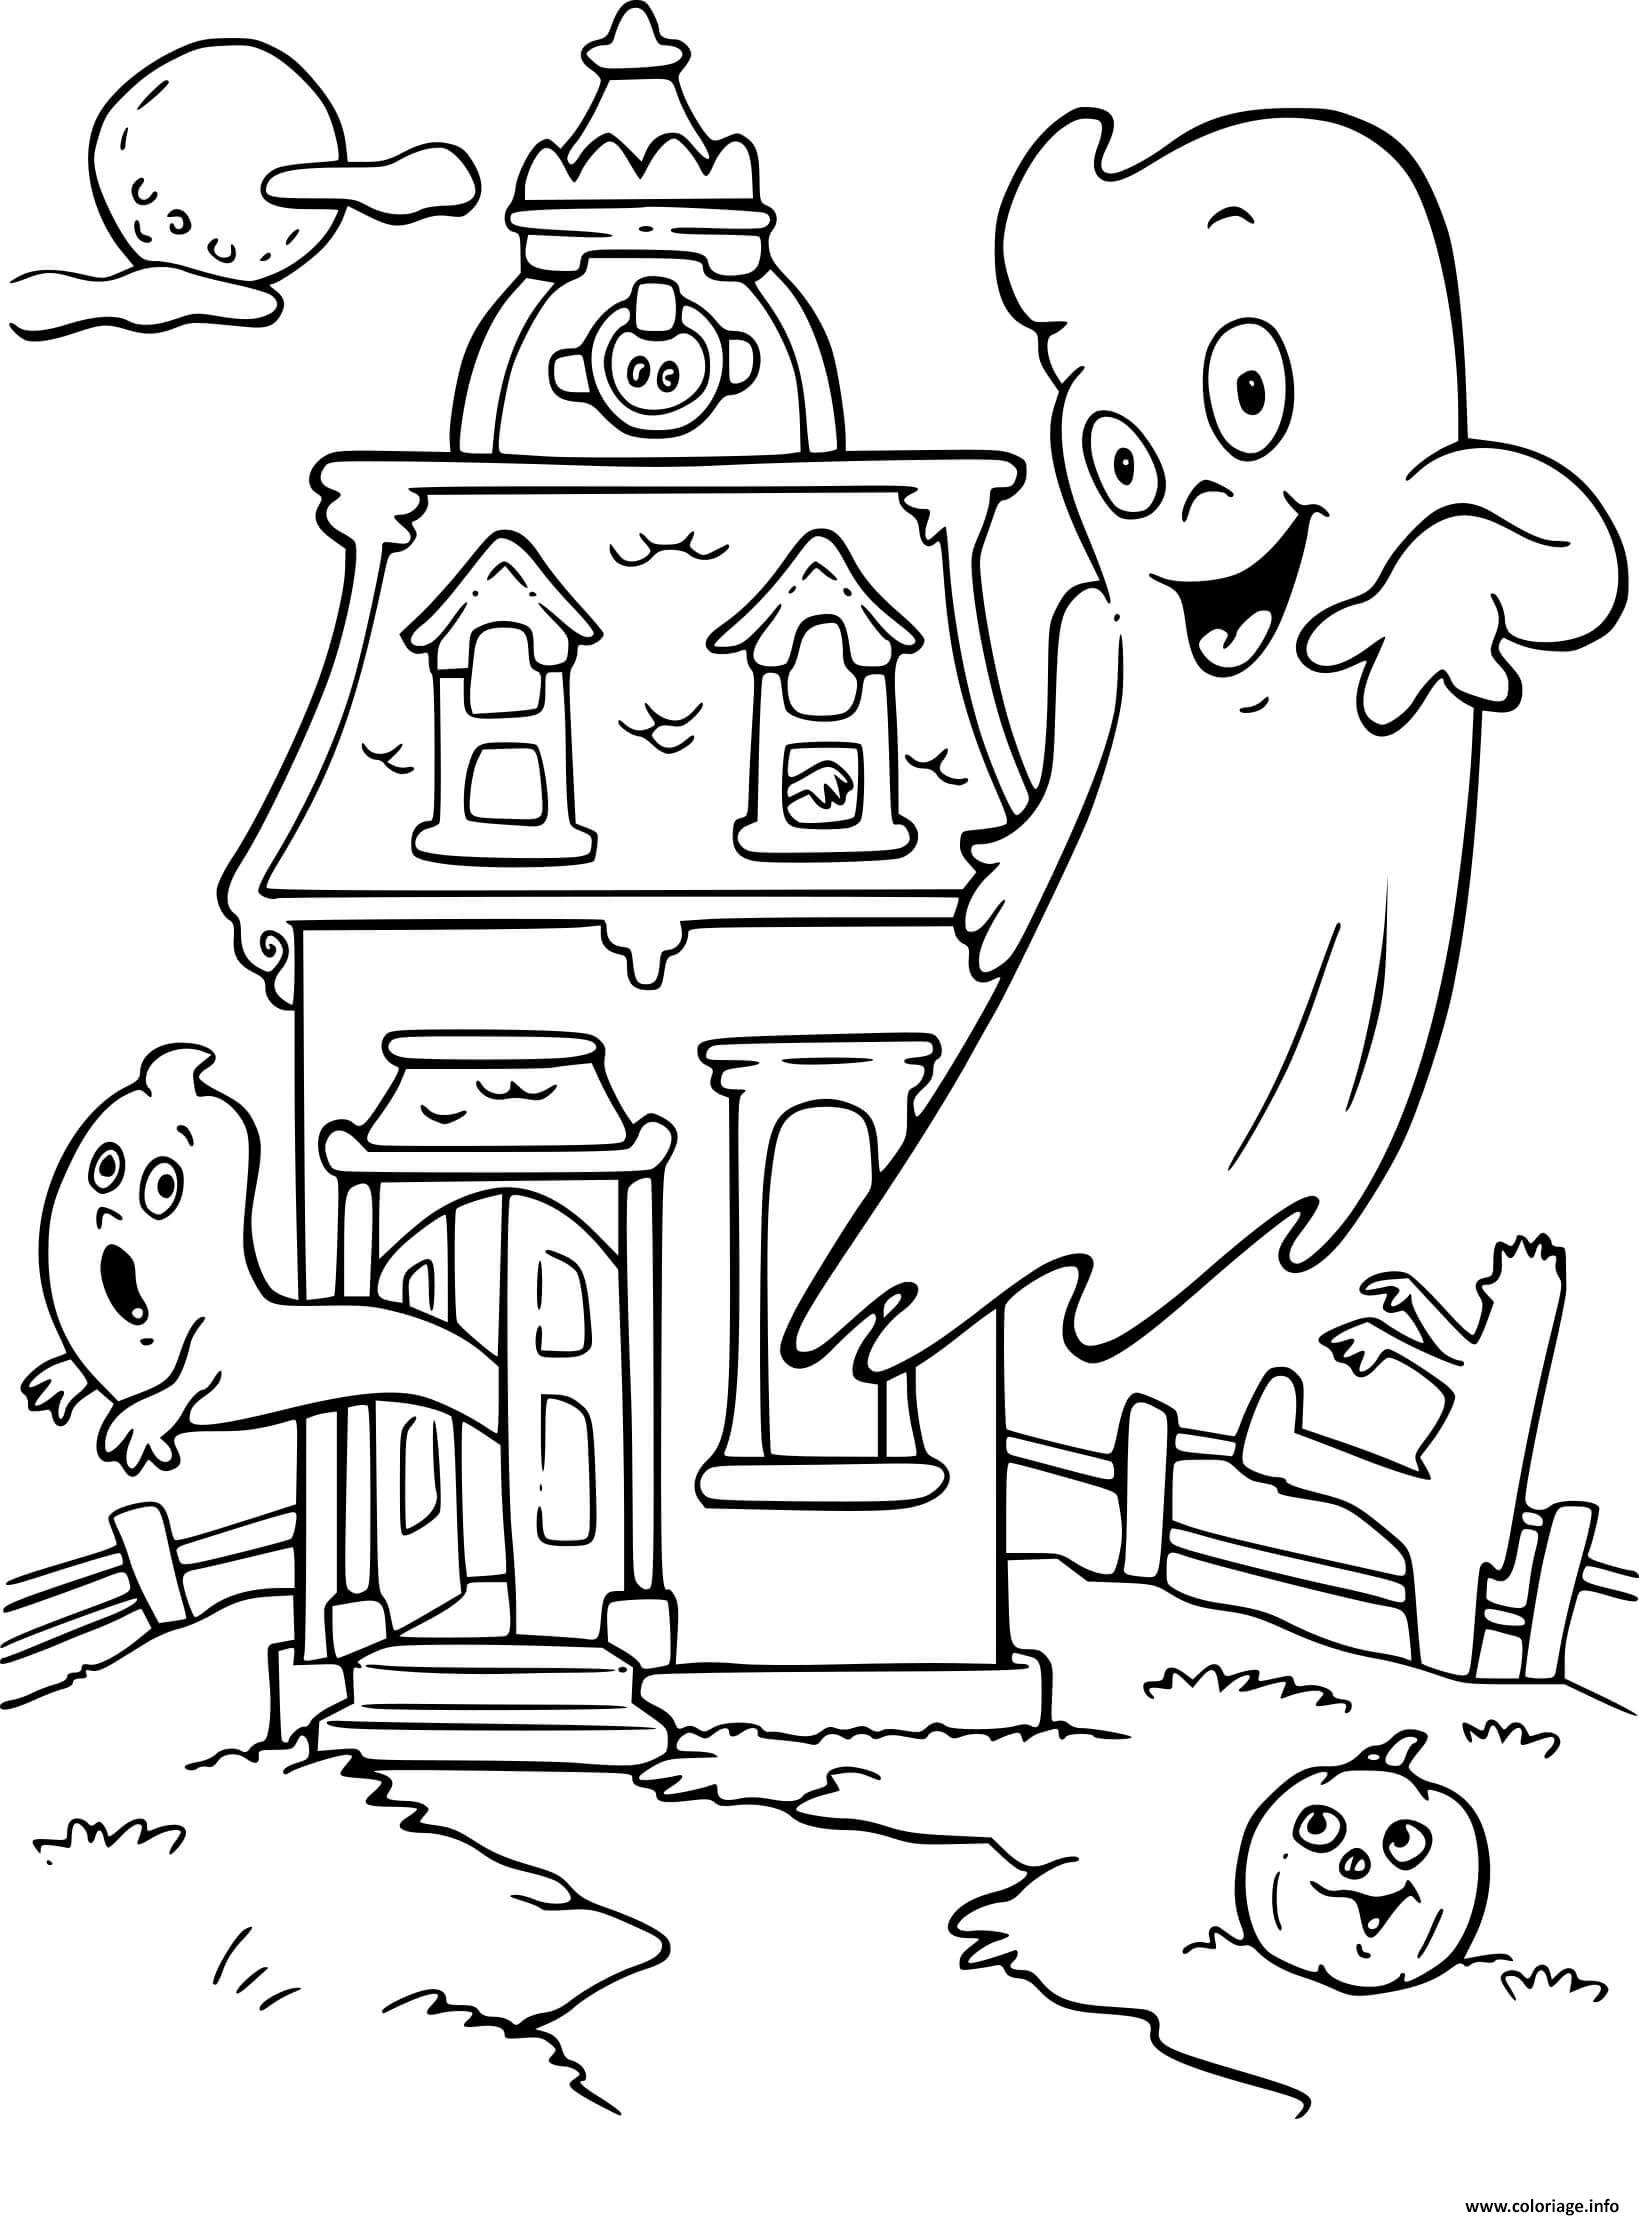 Dessin maison hantee fantomes Coloriage Gratuit à Imprimer